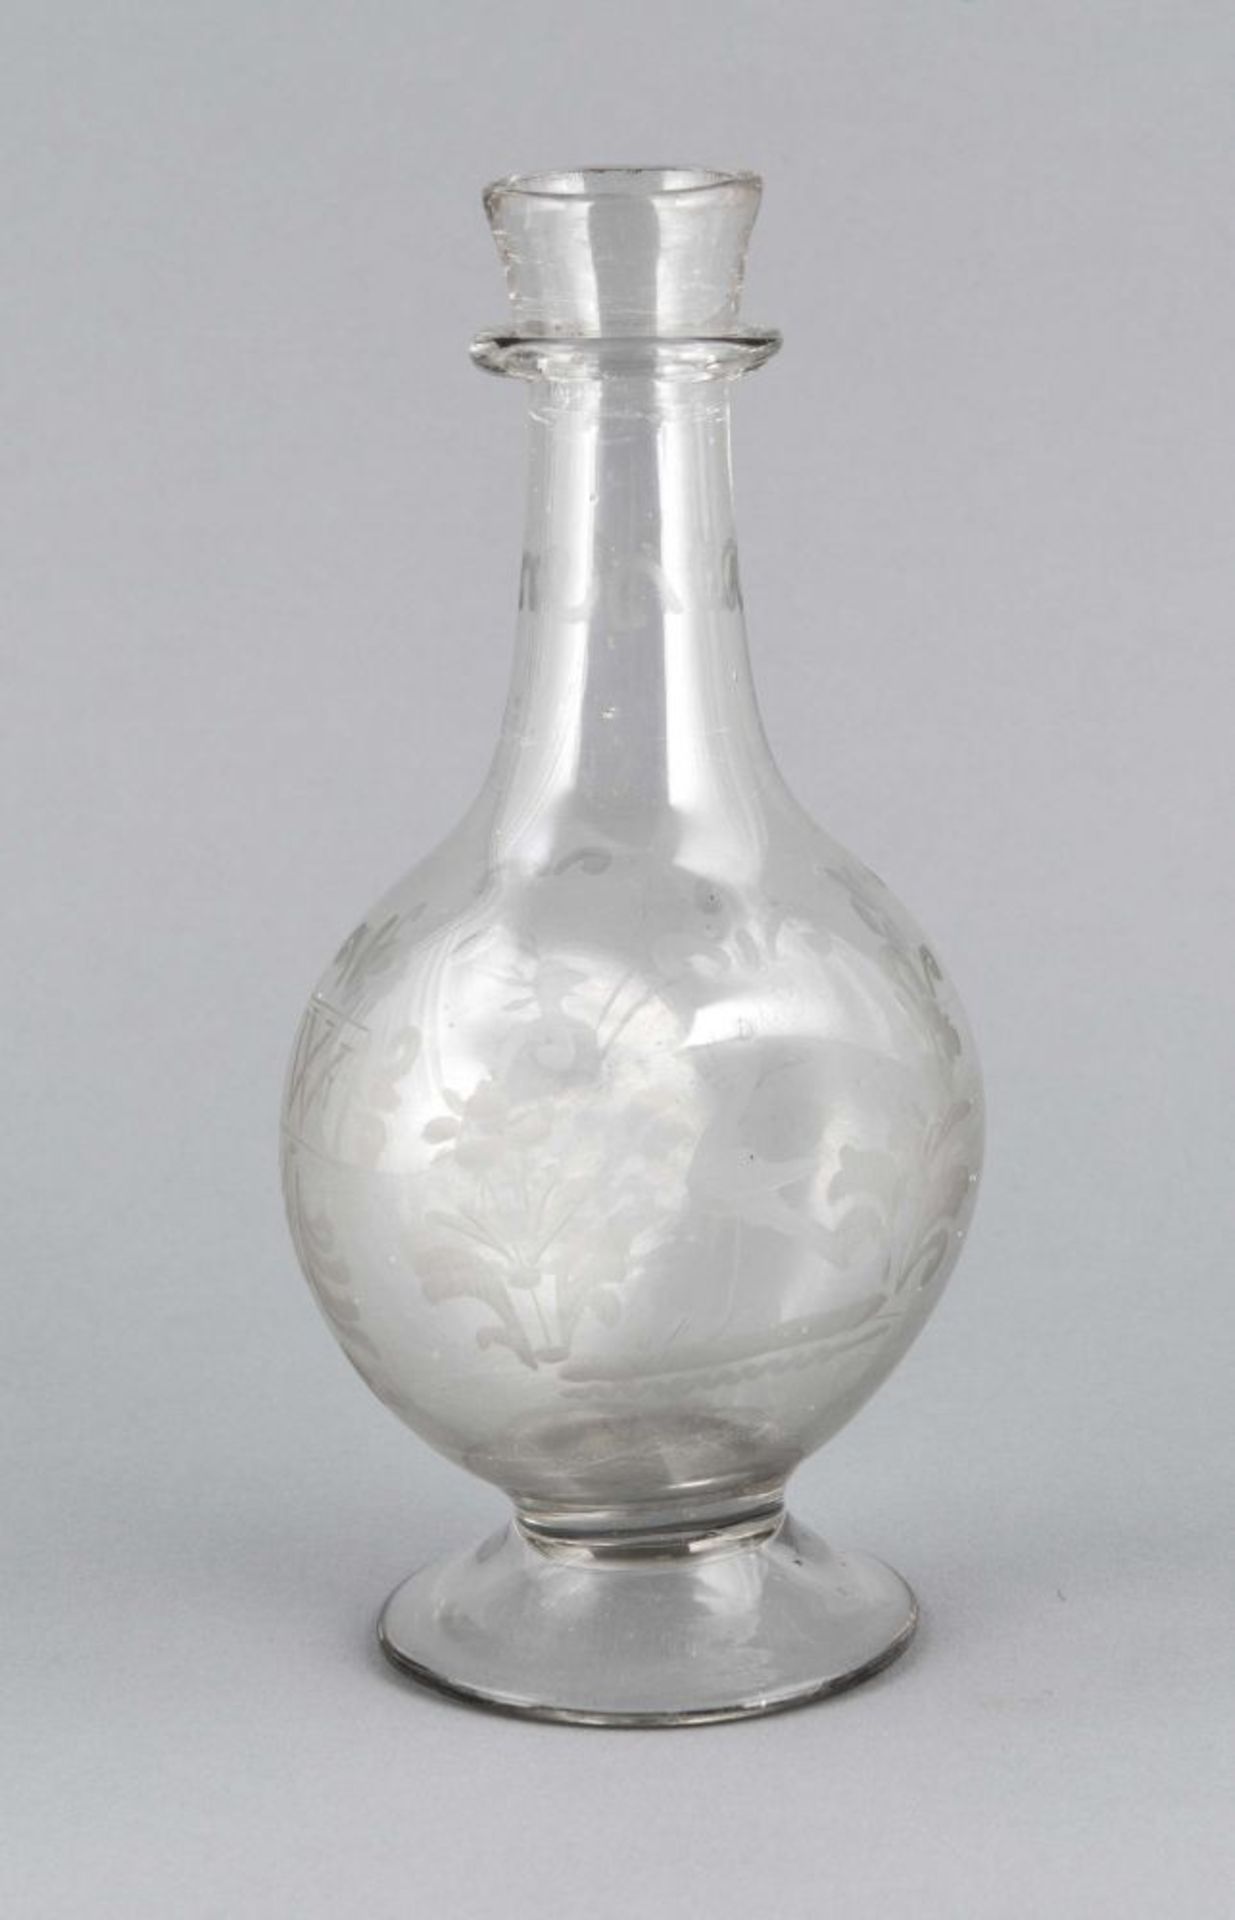 Vase, frühes 19. Jh., runder Stand, bauchiger, an 2 Seiten abgeflachter Korpus, schlanker Hals, im